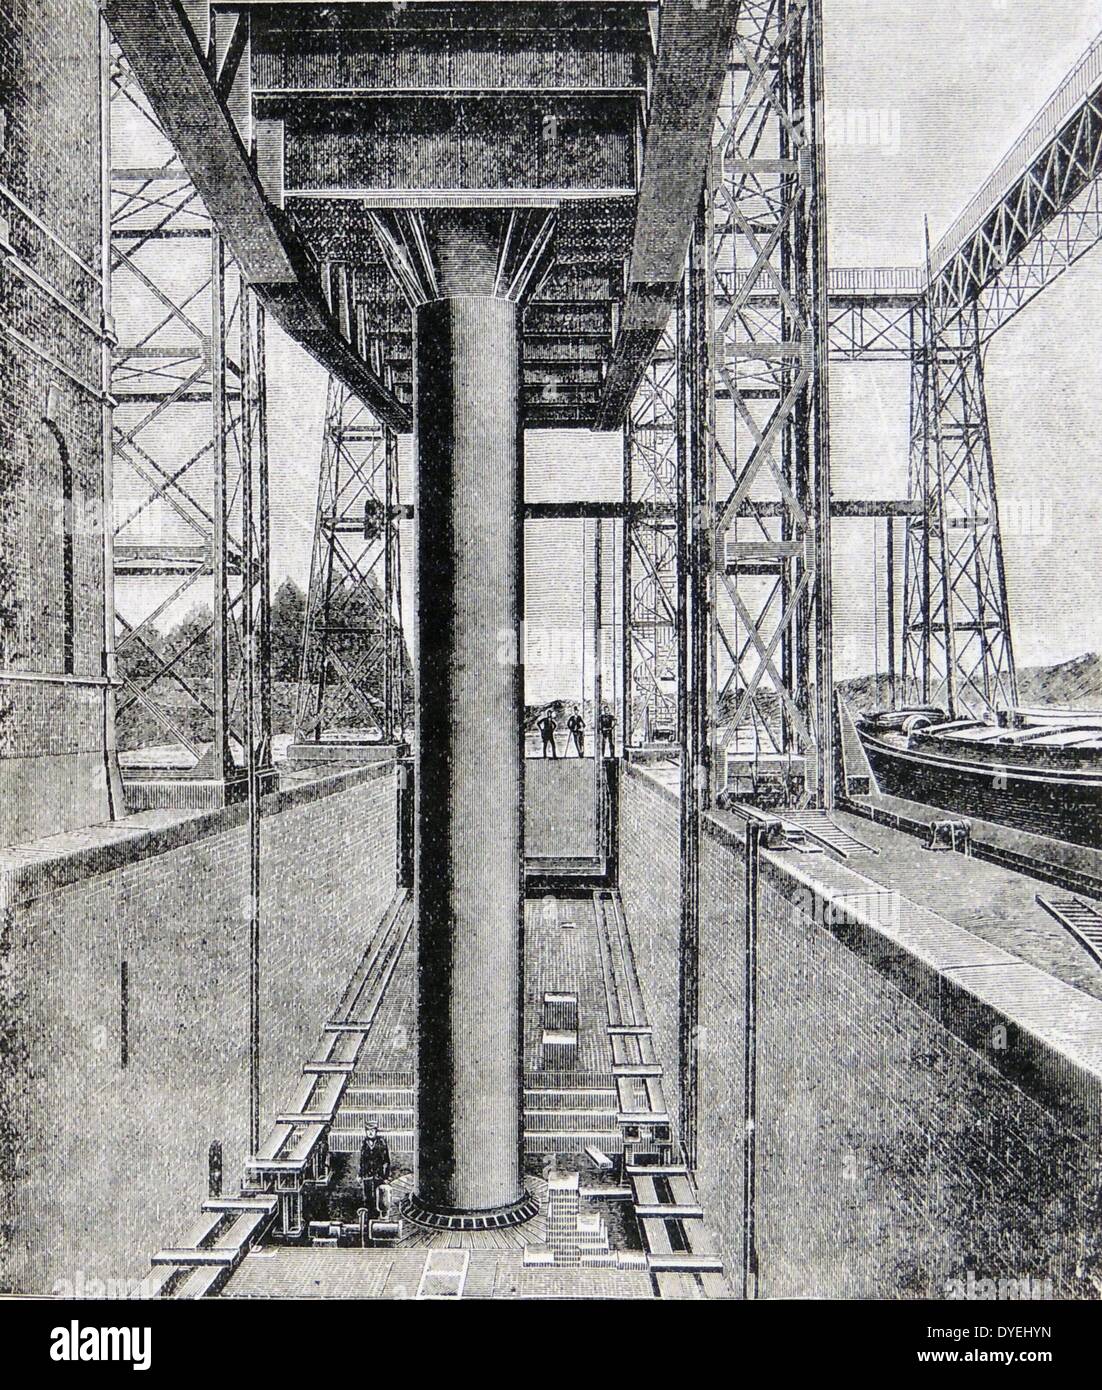 Hydraulikzylinder auf der La Louviere Canal Aufzug für die wassertröge mit lastkähnen von einer Ebene auf den Kanal zu einem anderen. Gravur, Zwiebel, 1895. Stockfoto